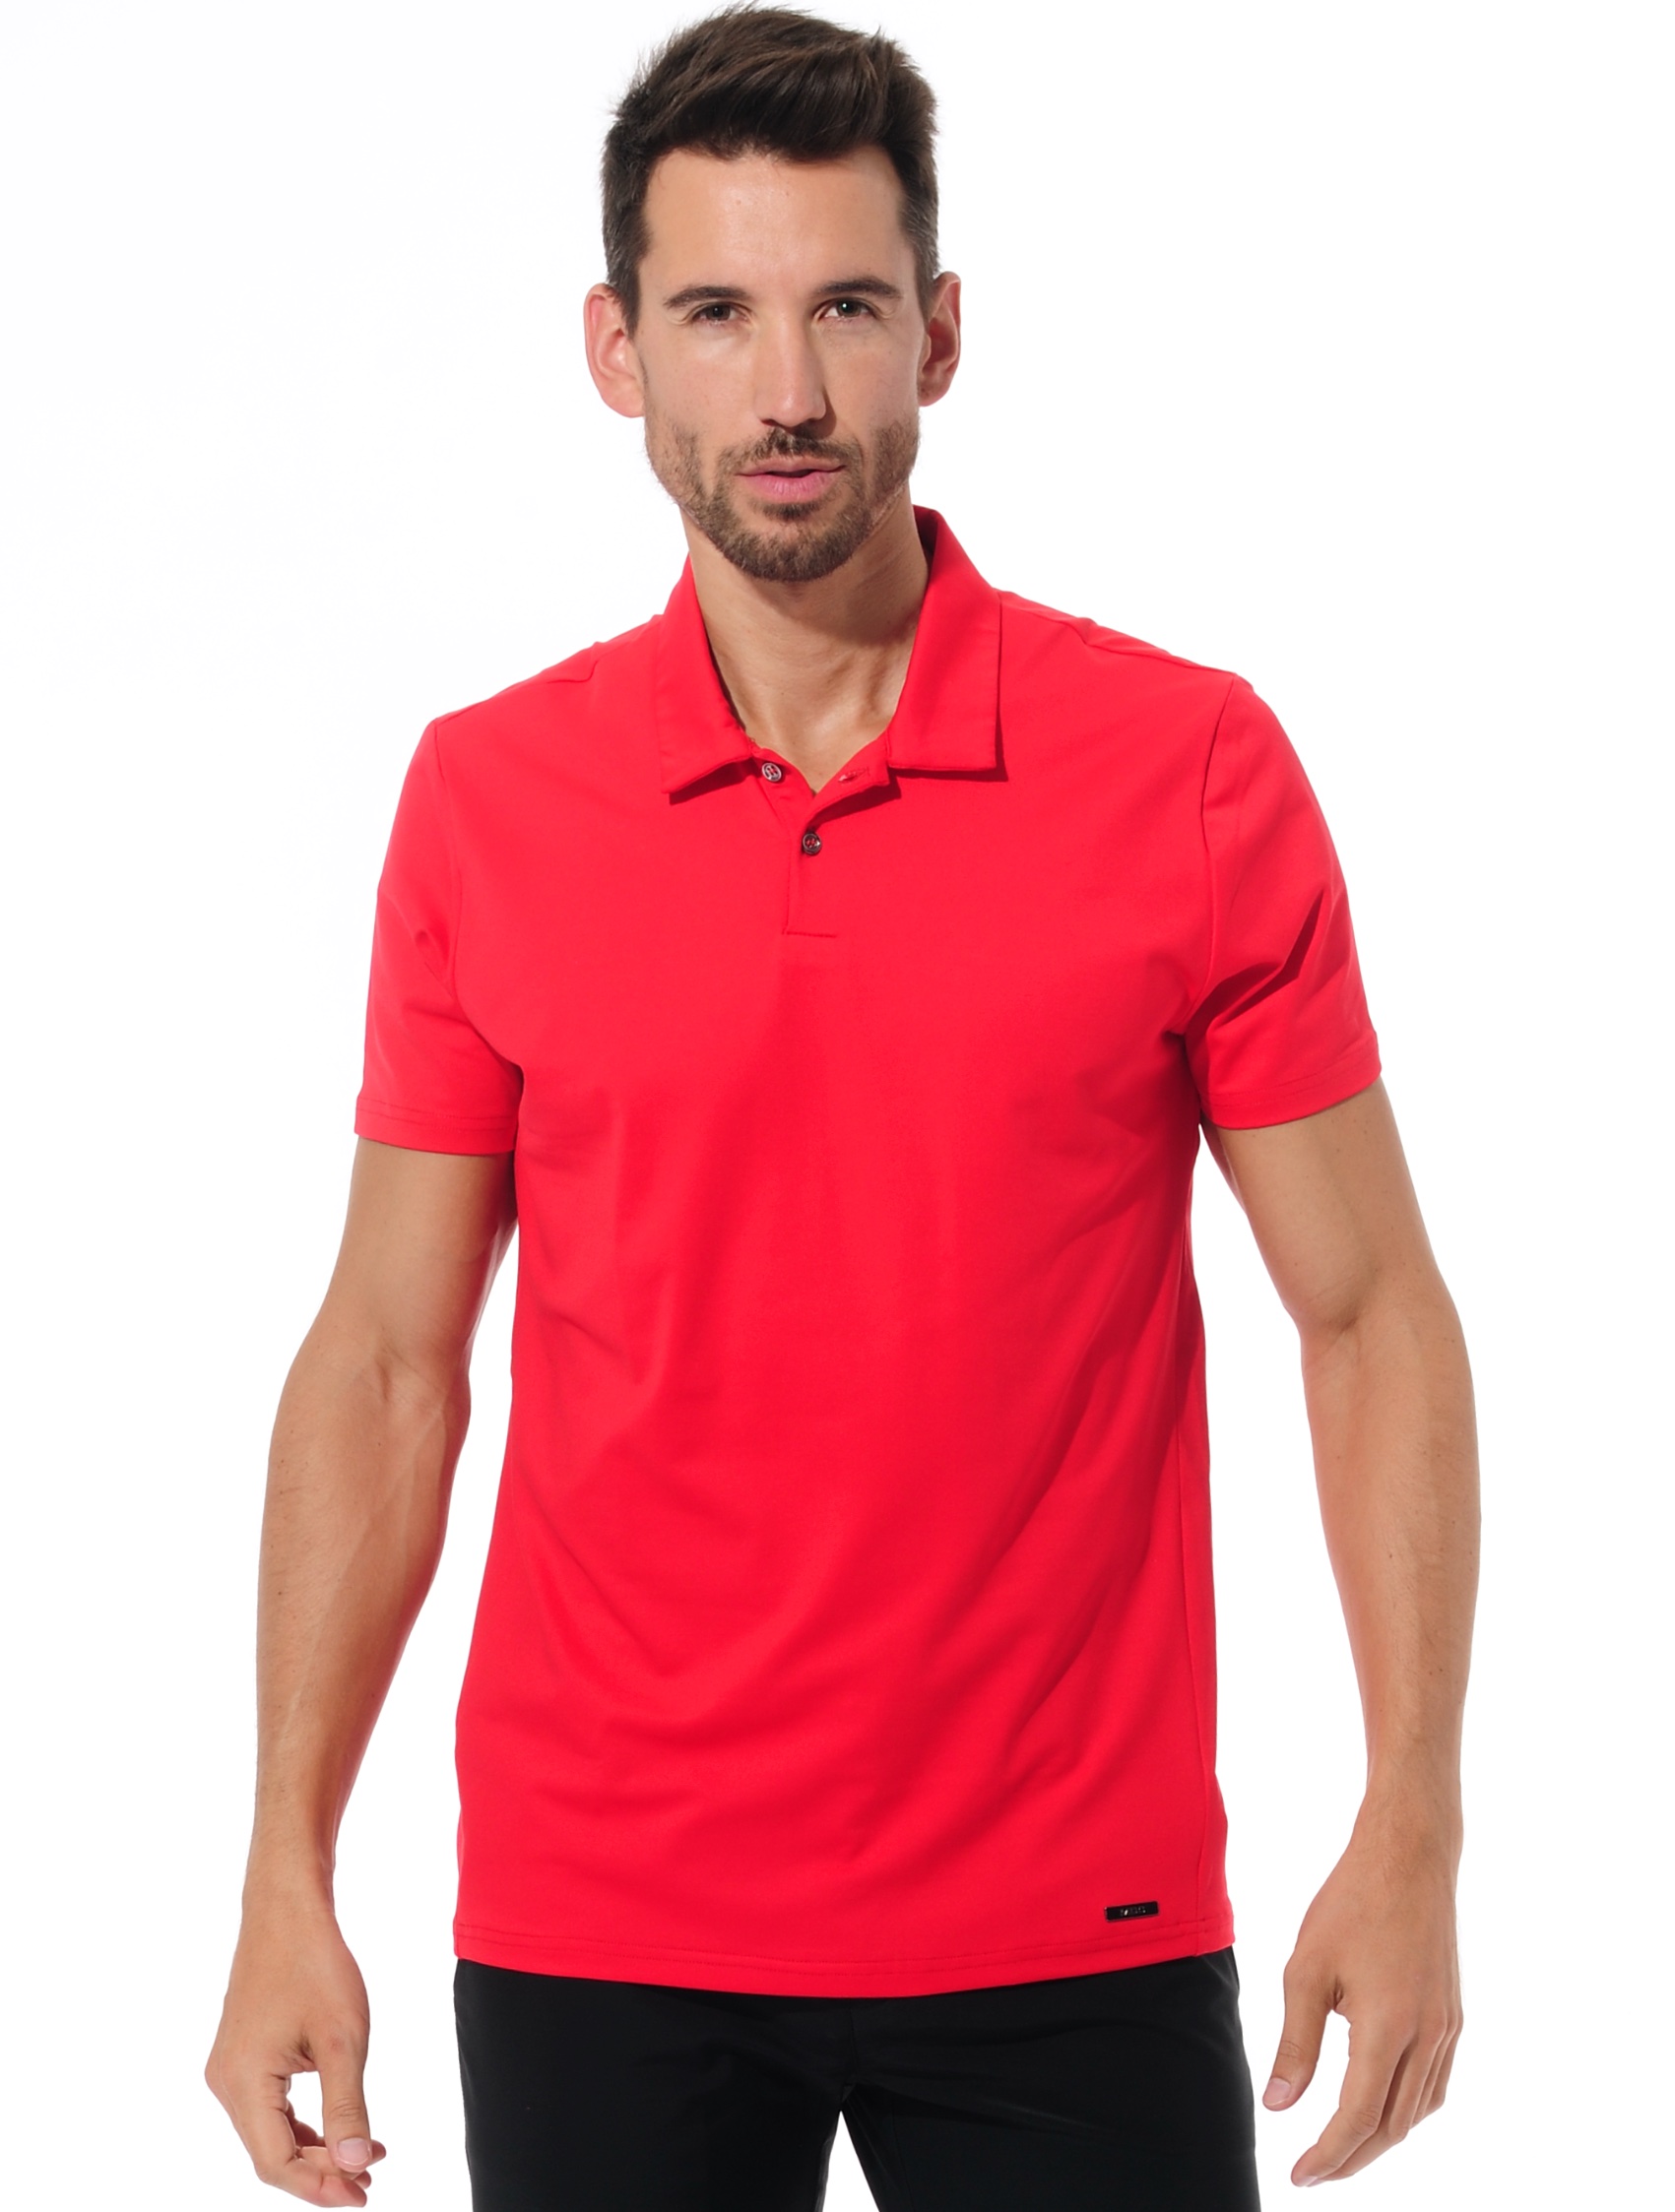 Golf Poloshirt red